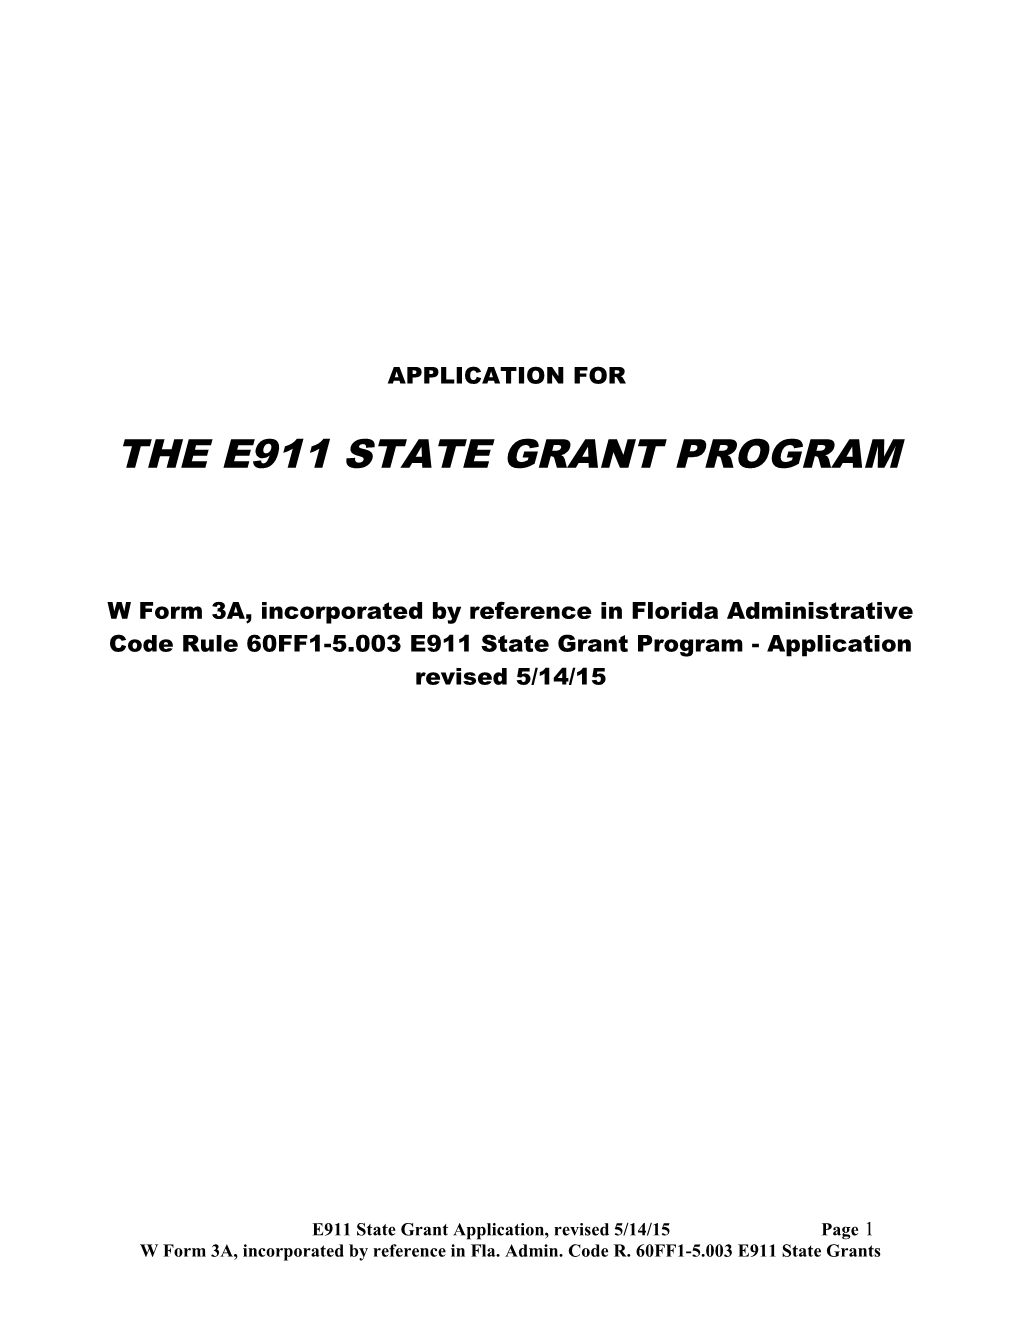 The E911 State Grant Program